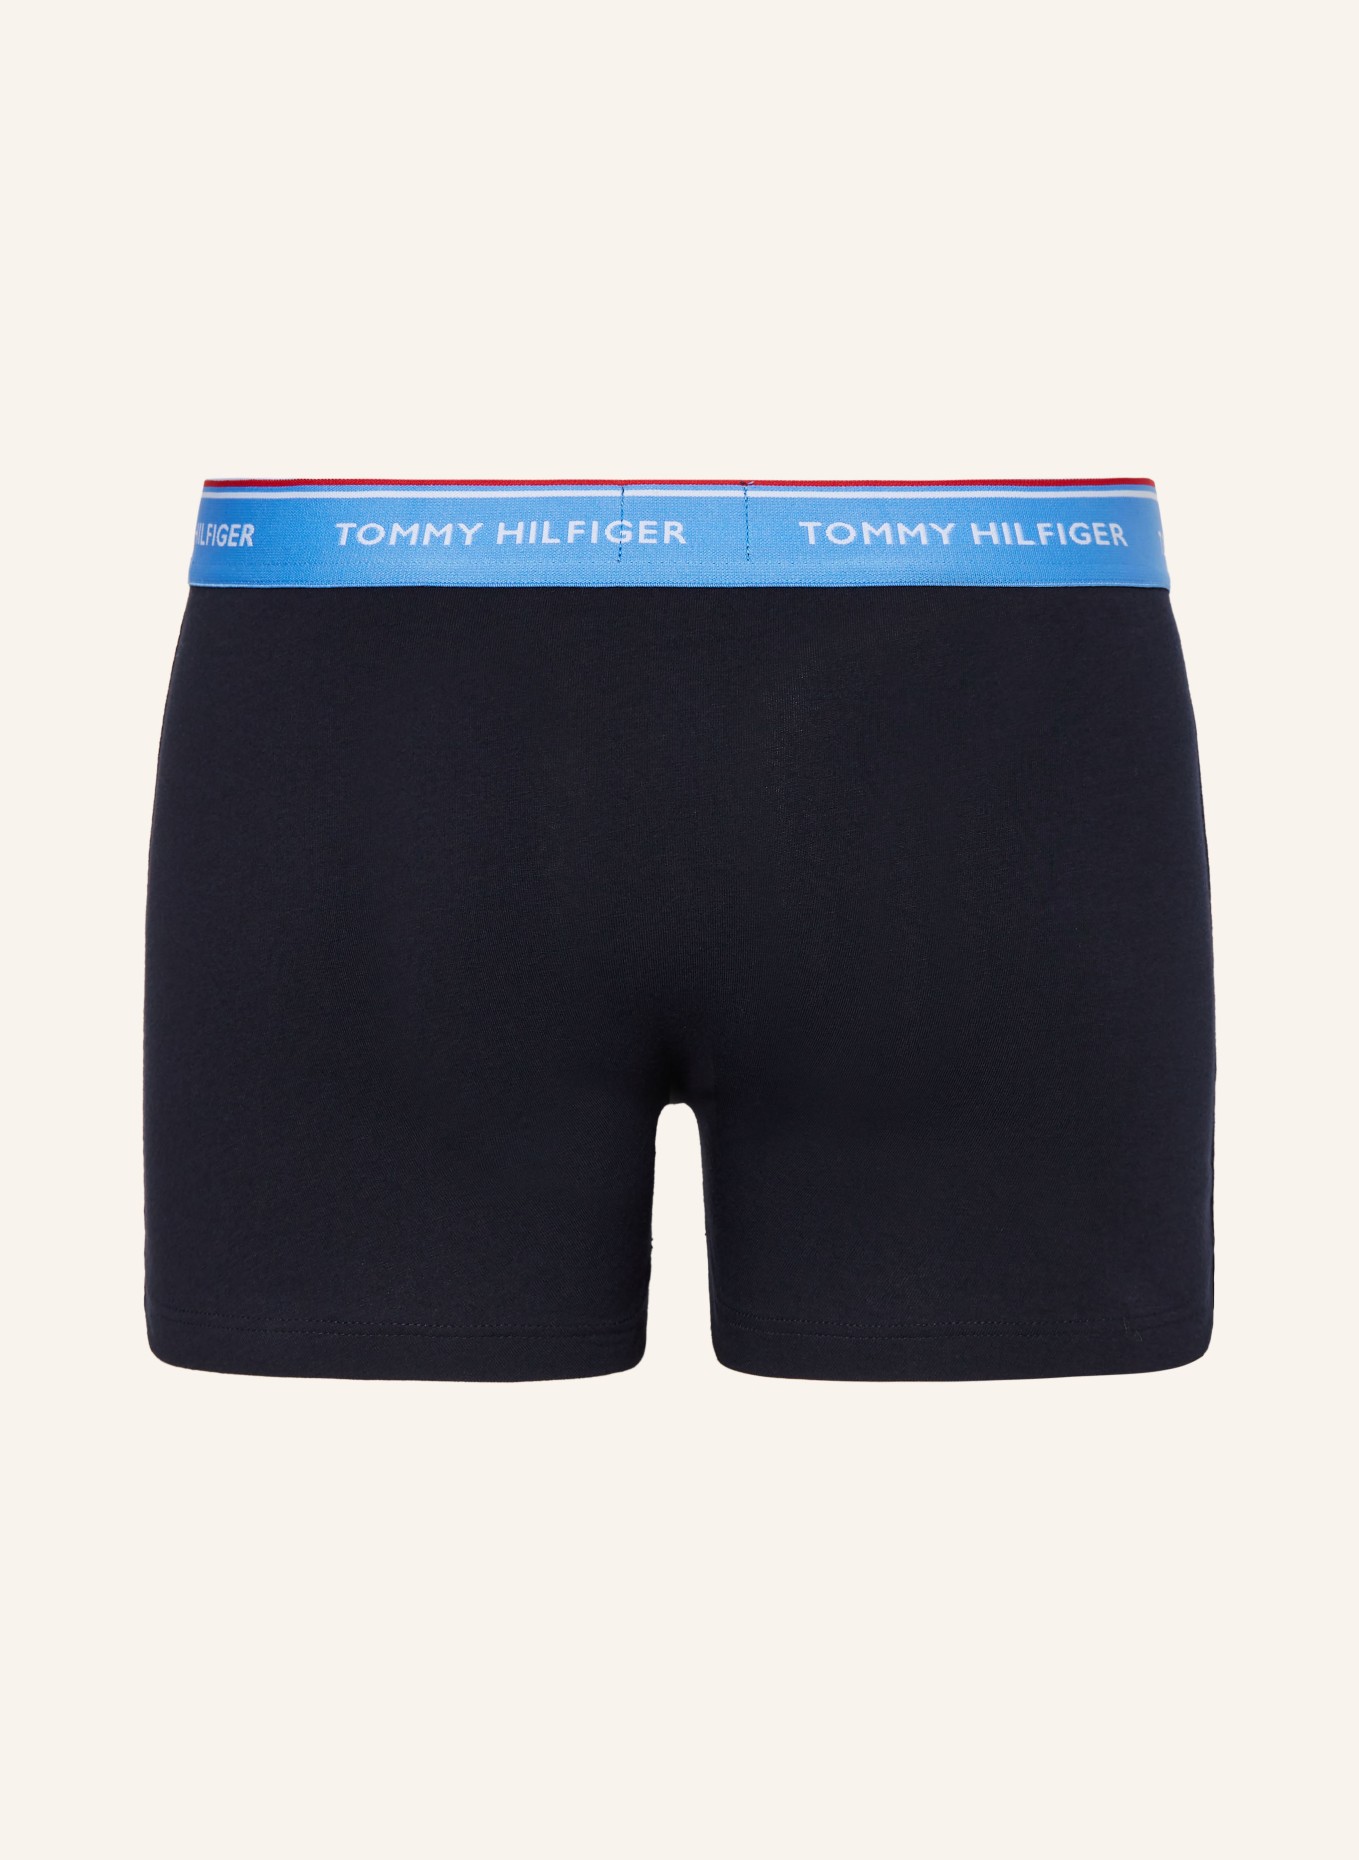 TOMMY HILFIGER 5-pack boxer shorts, Color: BLACK (Image 2)